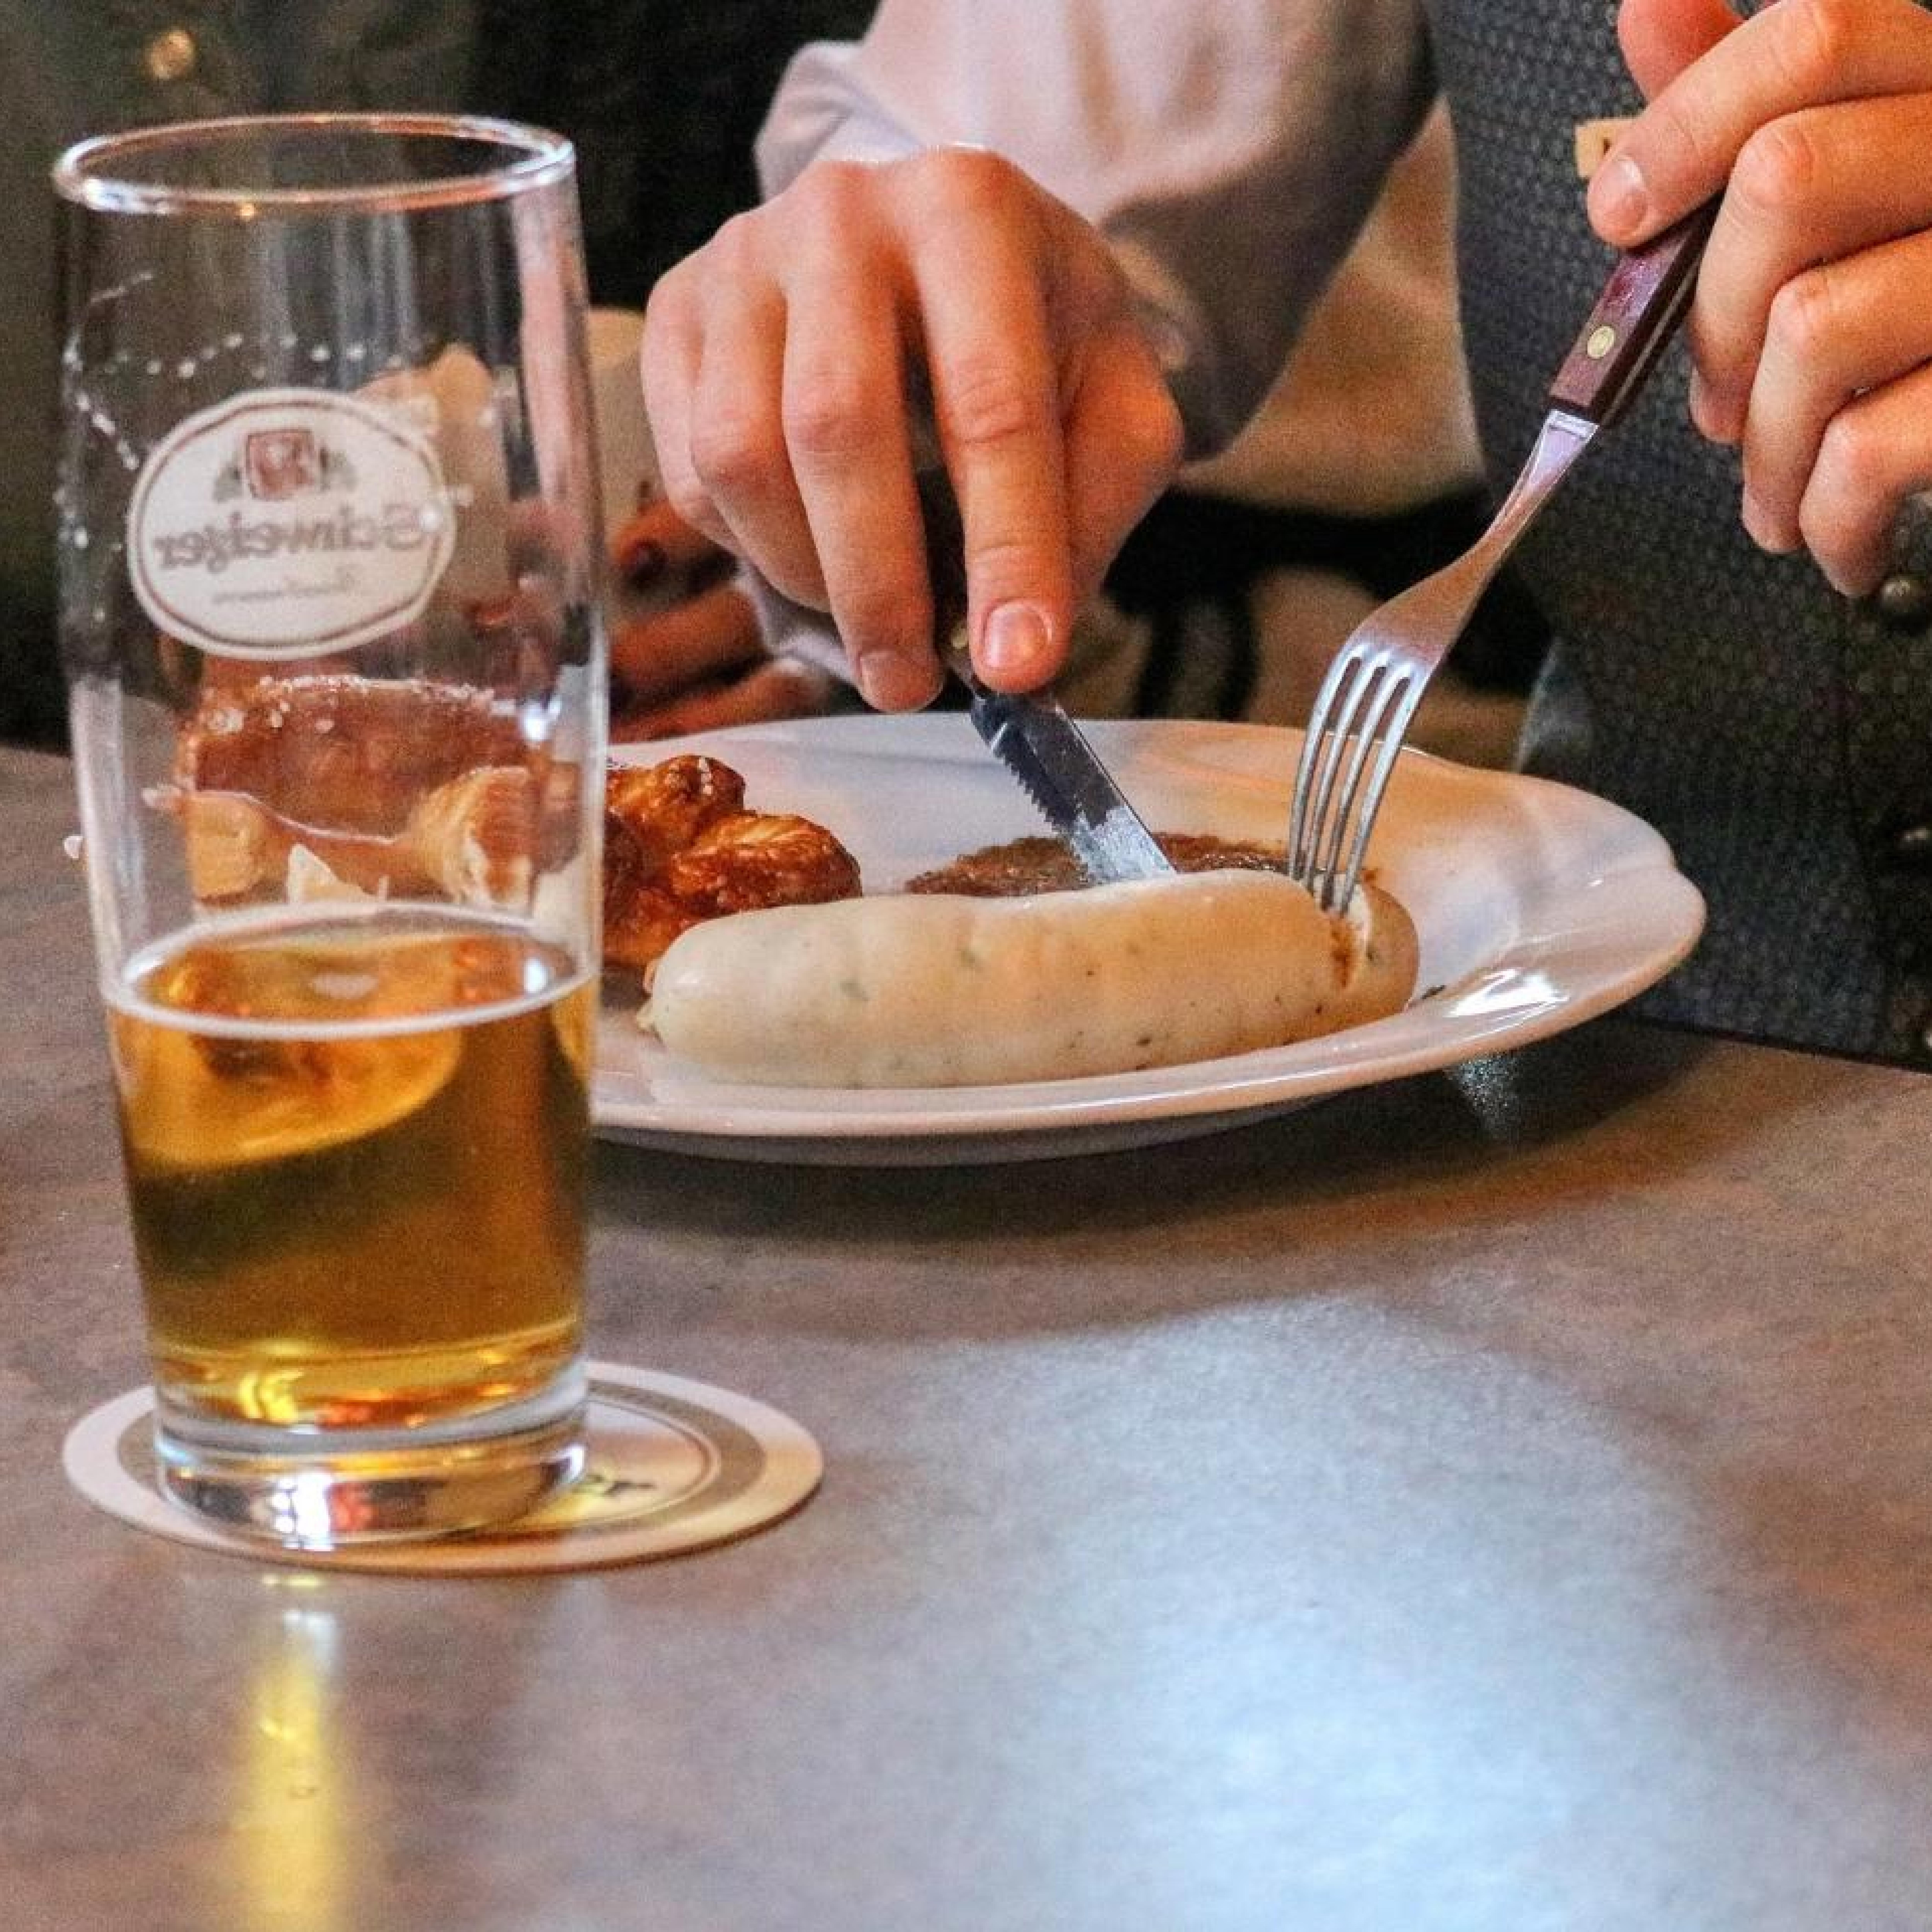 Auf einem Teller liegt eine Weißwurst mit Senf, daneben steht ein halbvolles Bierglas.